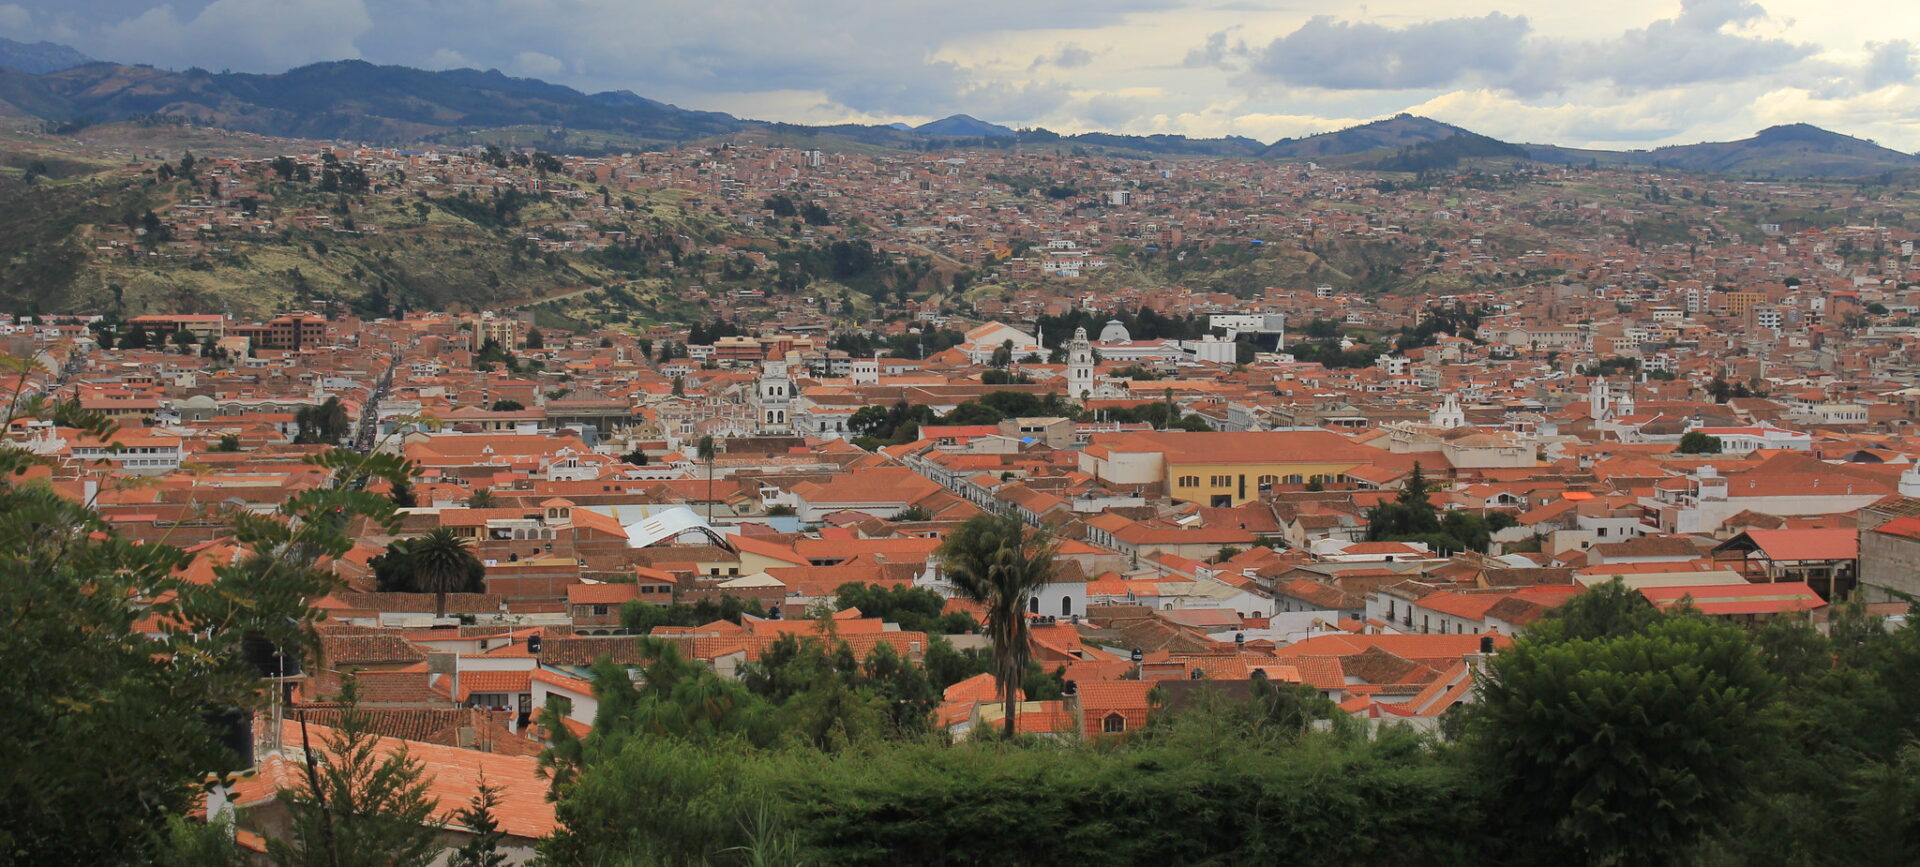 La ville de Sucre, la capitale constitutionnelle de la Bolivie | © Mauricio Frias/Flickr/CC BY-NC 2.0